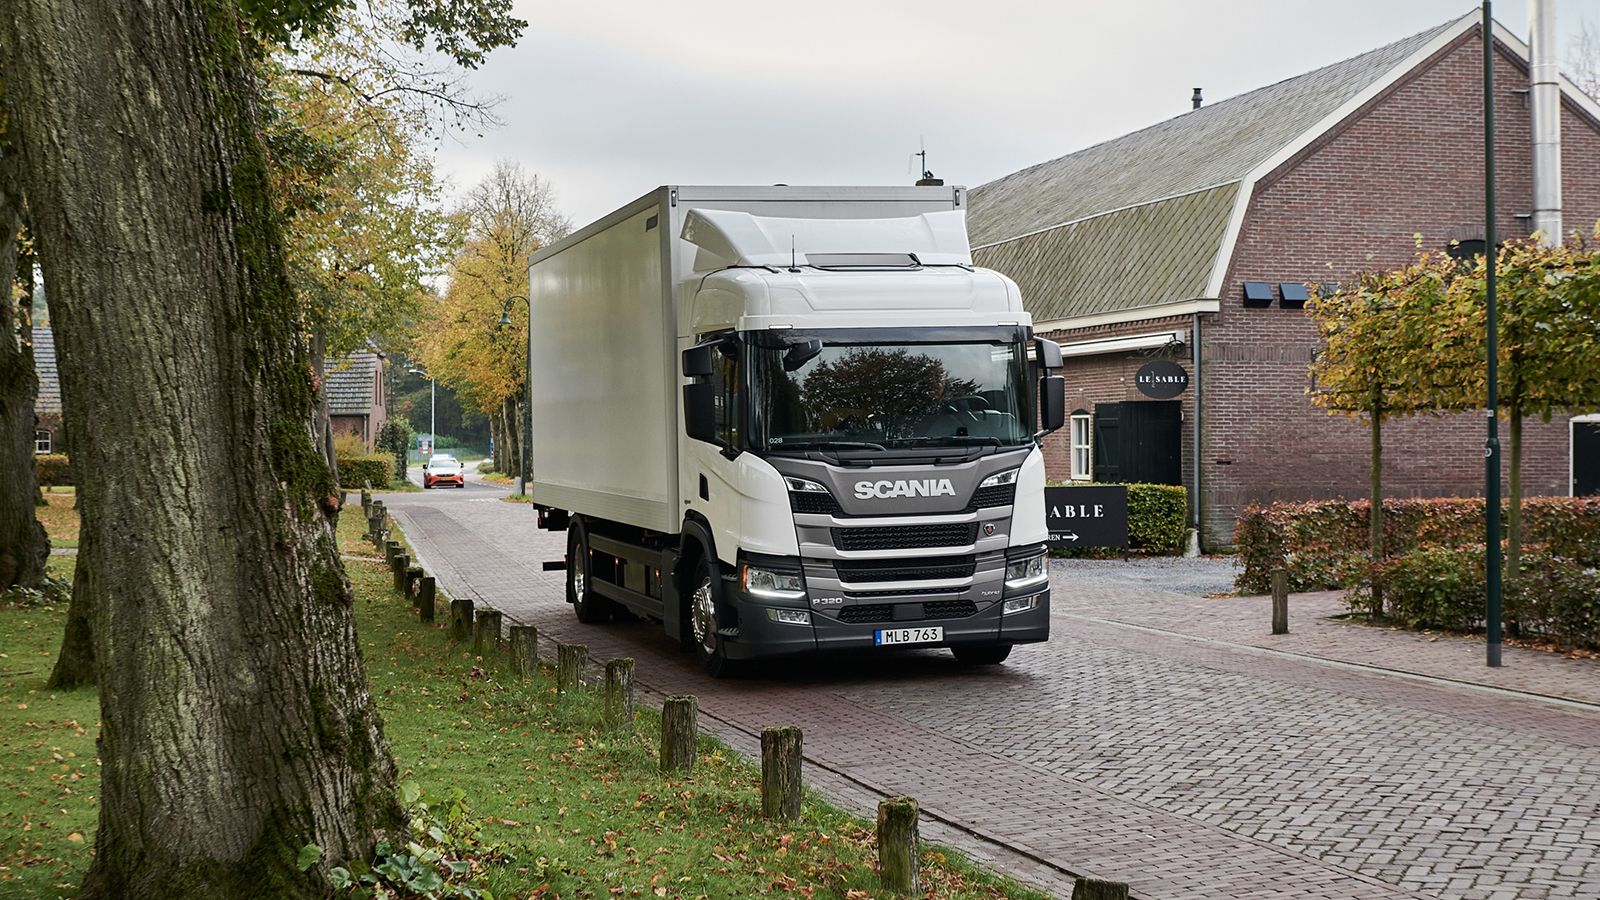 Εξοικονόμηση καυσίμου έως και κατά 40% σε αστικό περιβάλλον, υπόσχεται το υβριδικό φορτηγό της Scania, μεικτού βάρους έως και 36 τόνων.